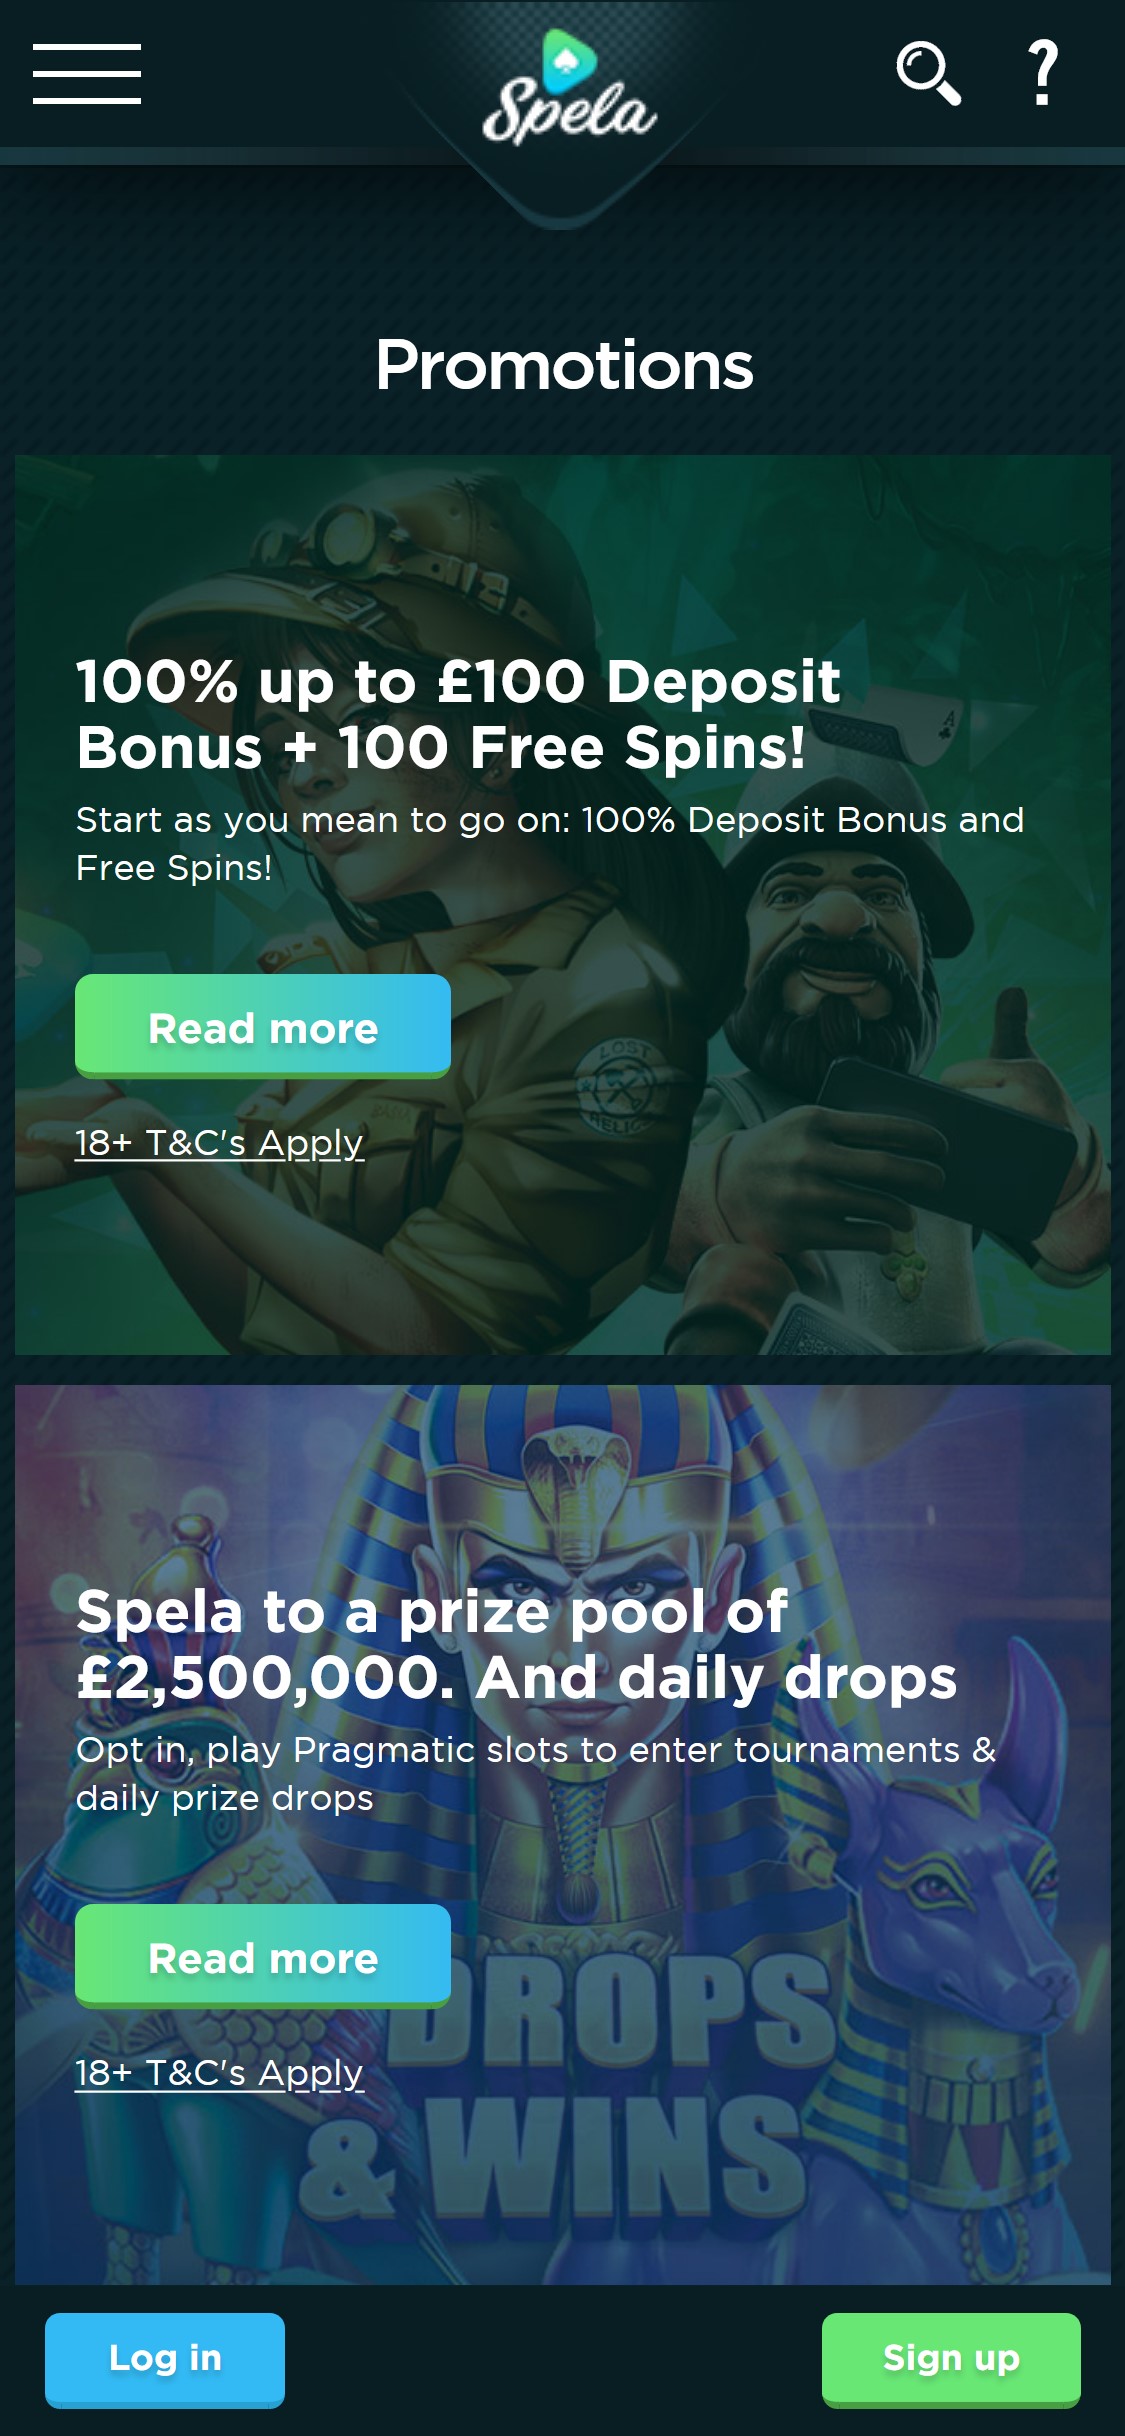 Spela Casino Mobile No Deposit Bonus Review